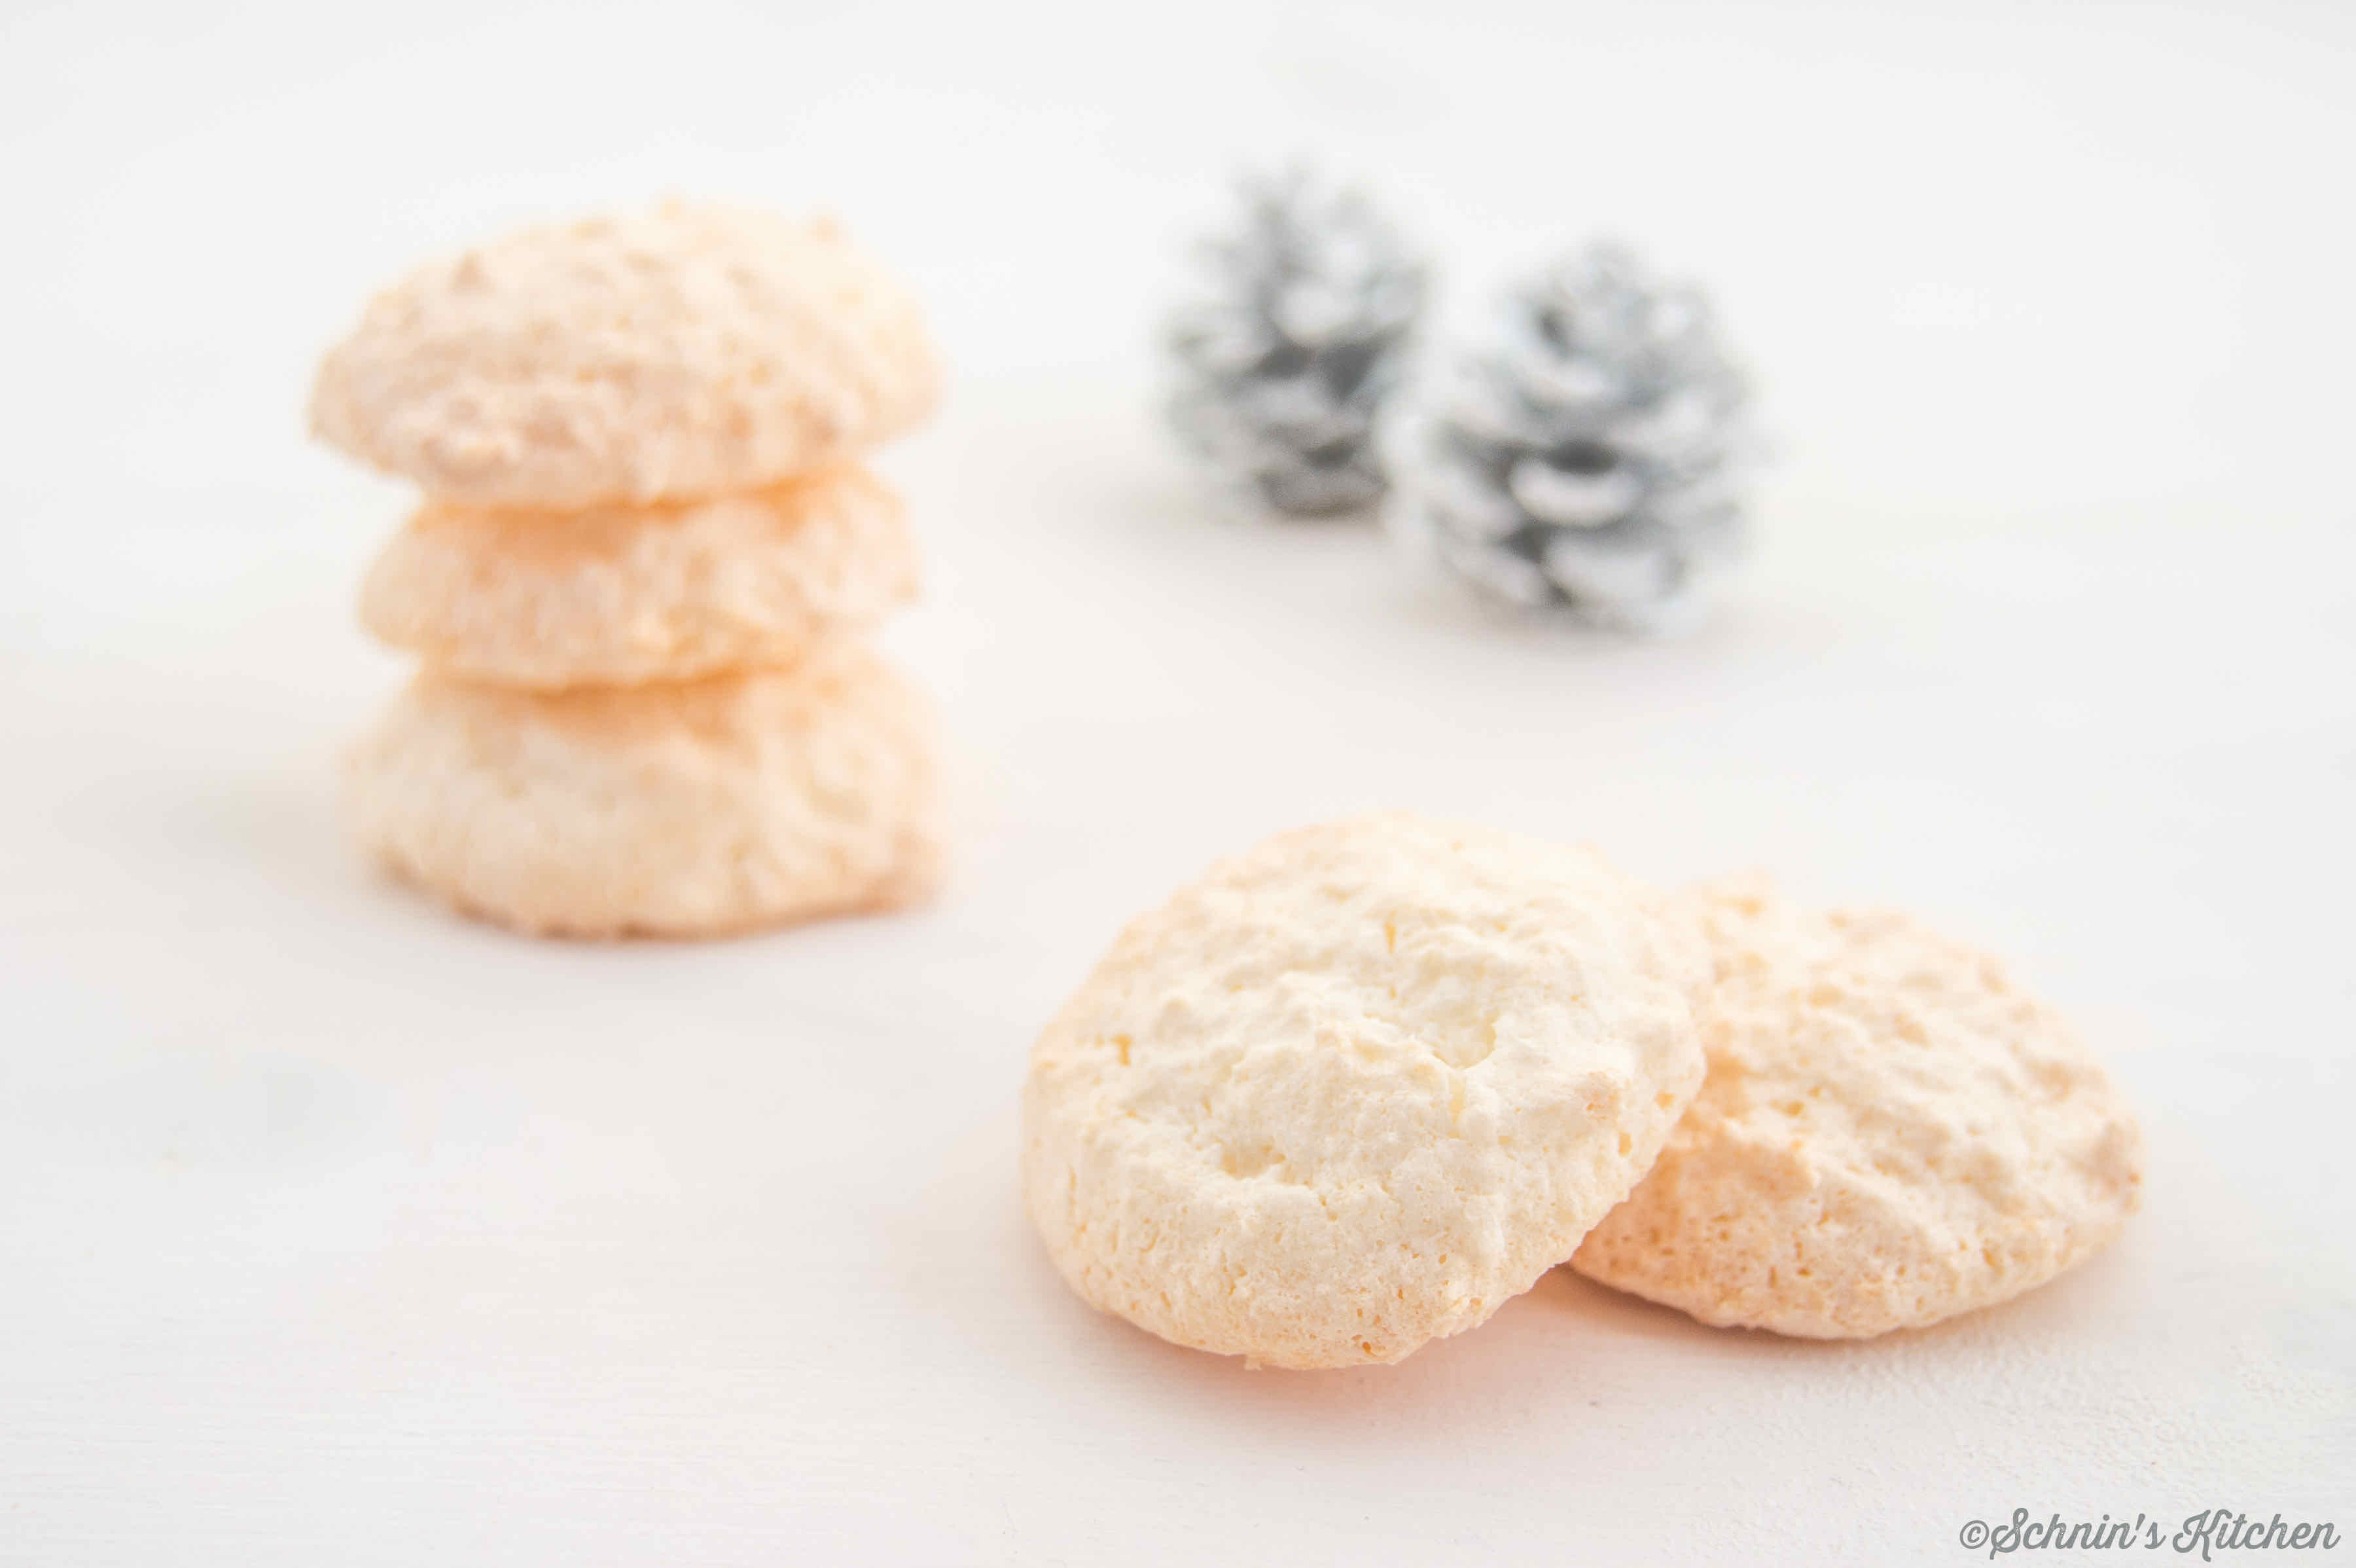 Kokosmakronen für die Weihnachtsbäckerei | www.schninskitchen.de